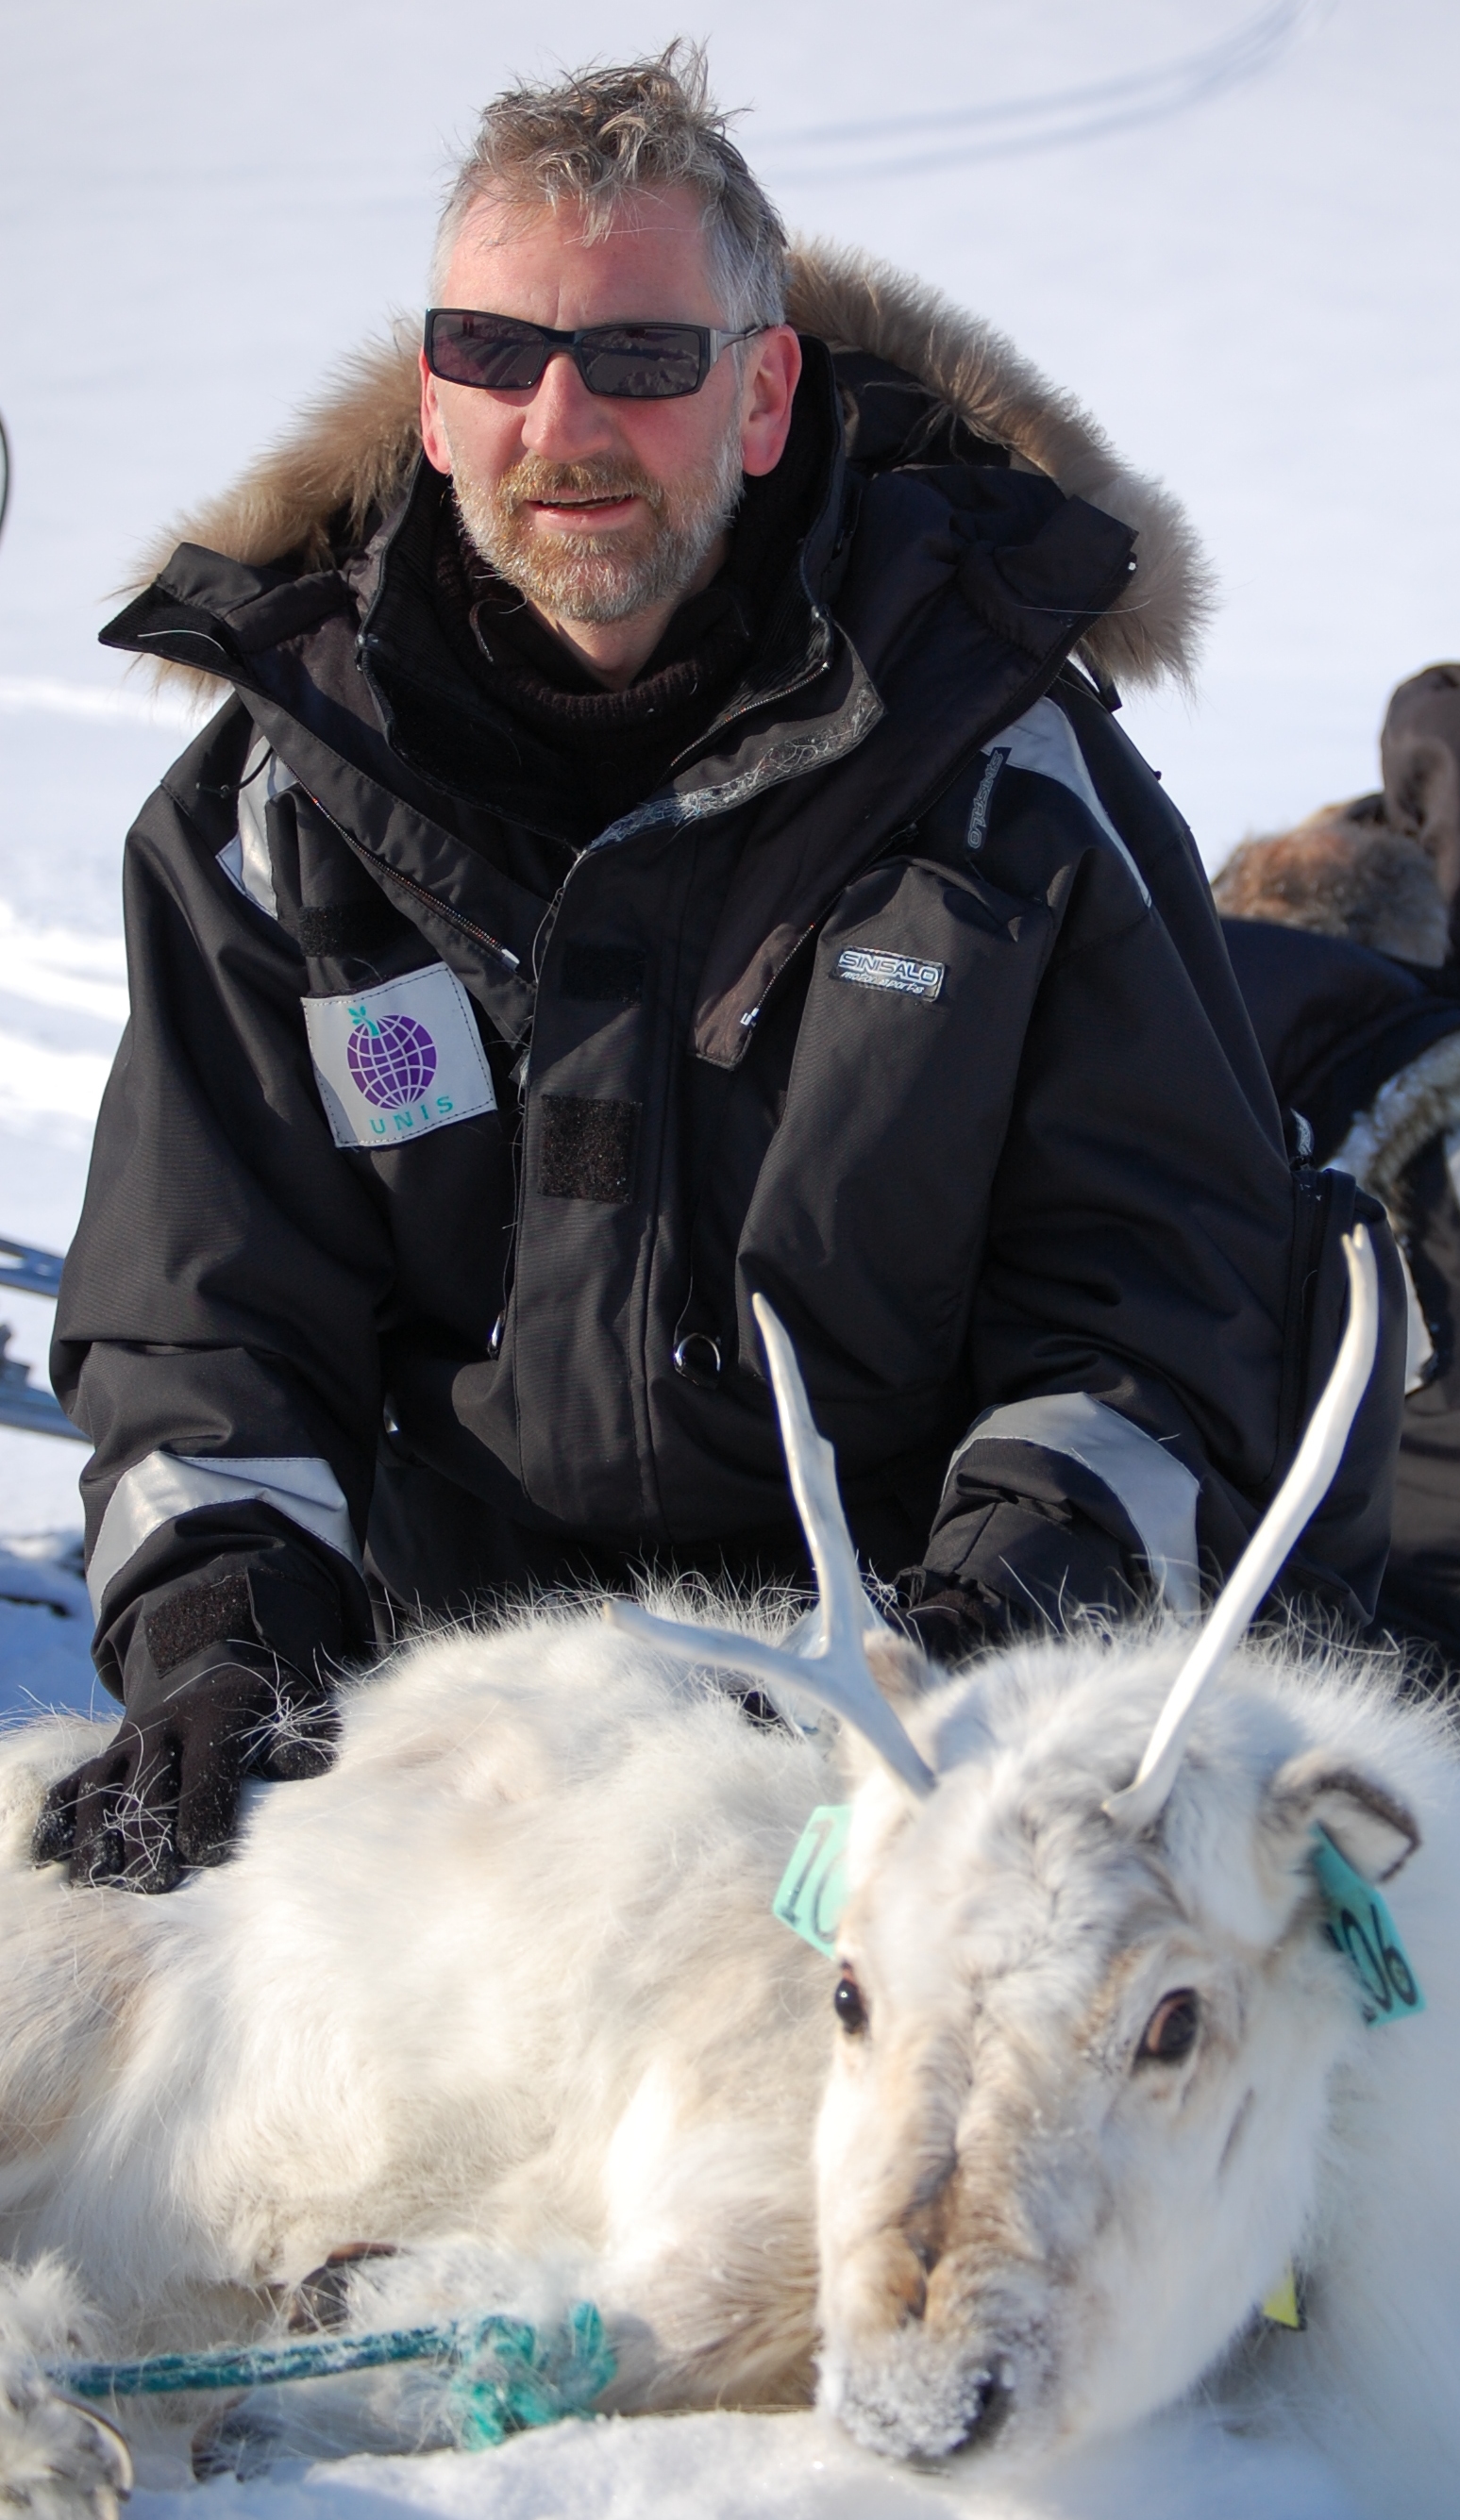 Ken with Svalbard reindeer